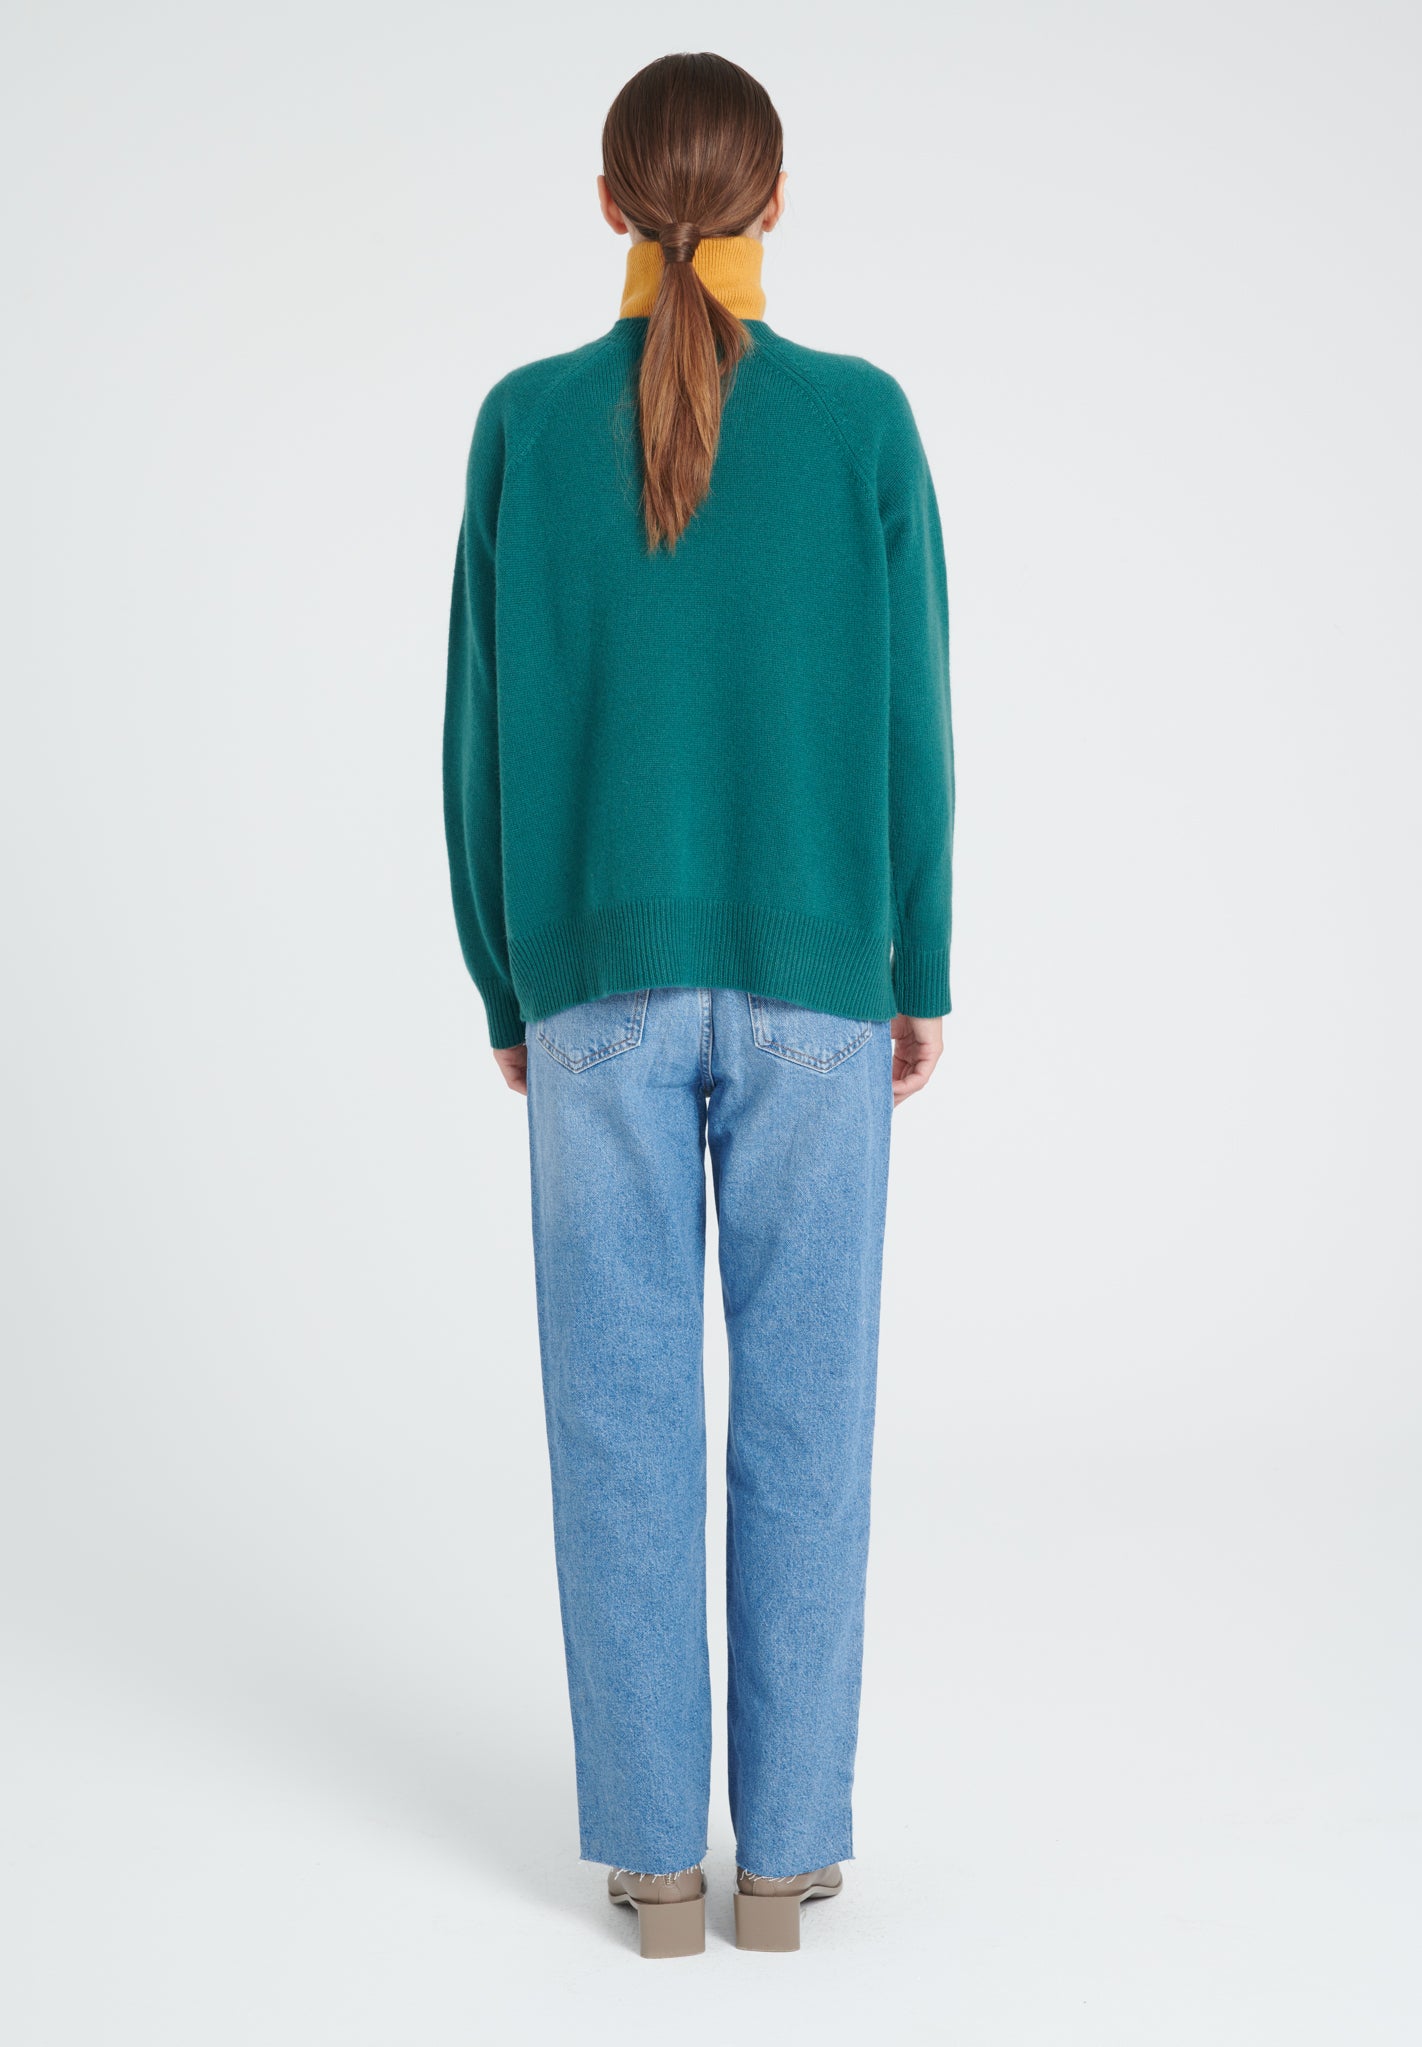 ZAYA 10 Round neck sweater with raglan sleeves in dark green 4-thread clover jacquard cashmere